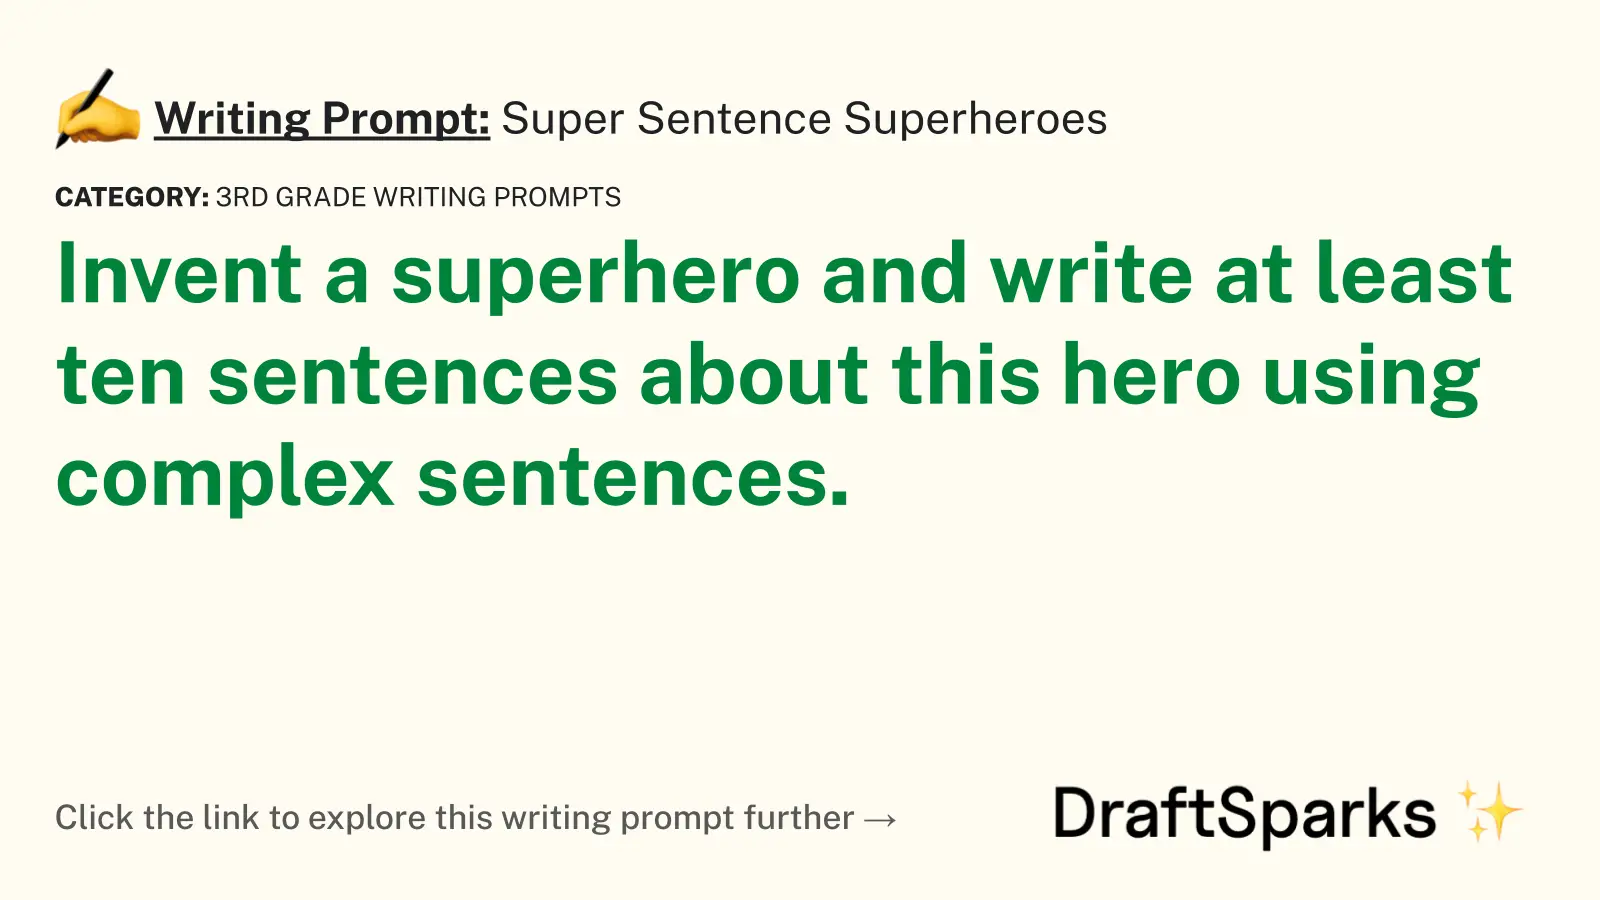 Super Sentence Superheroes